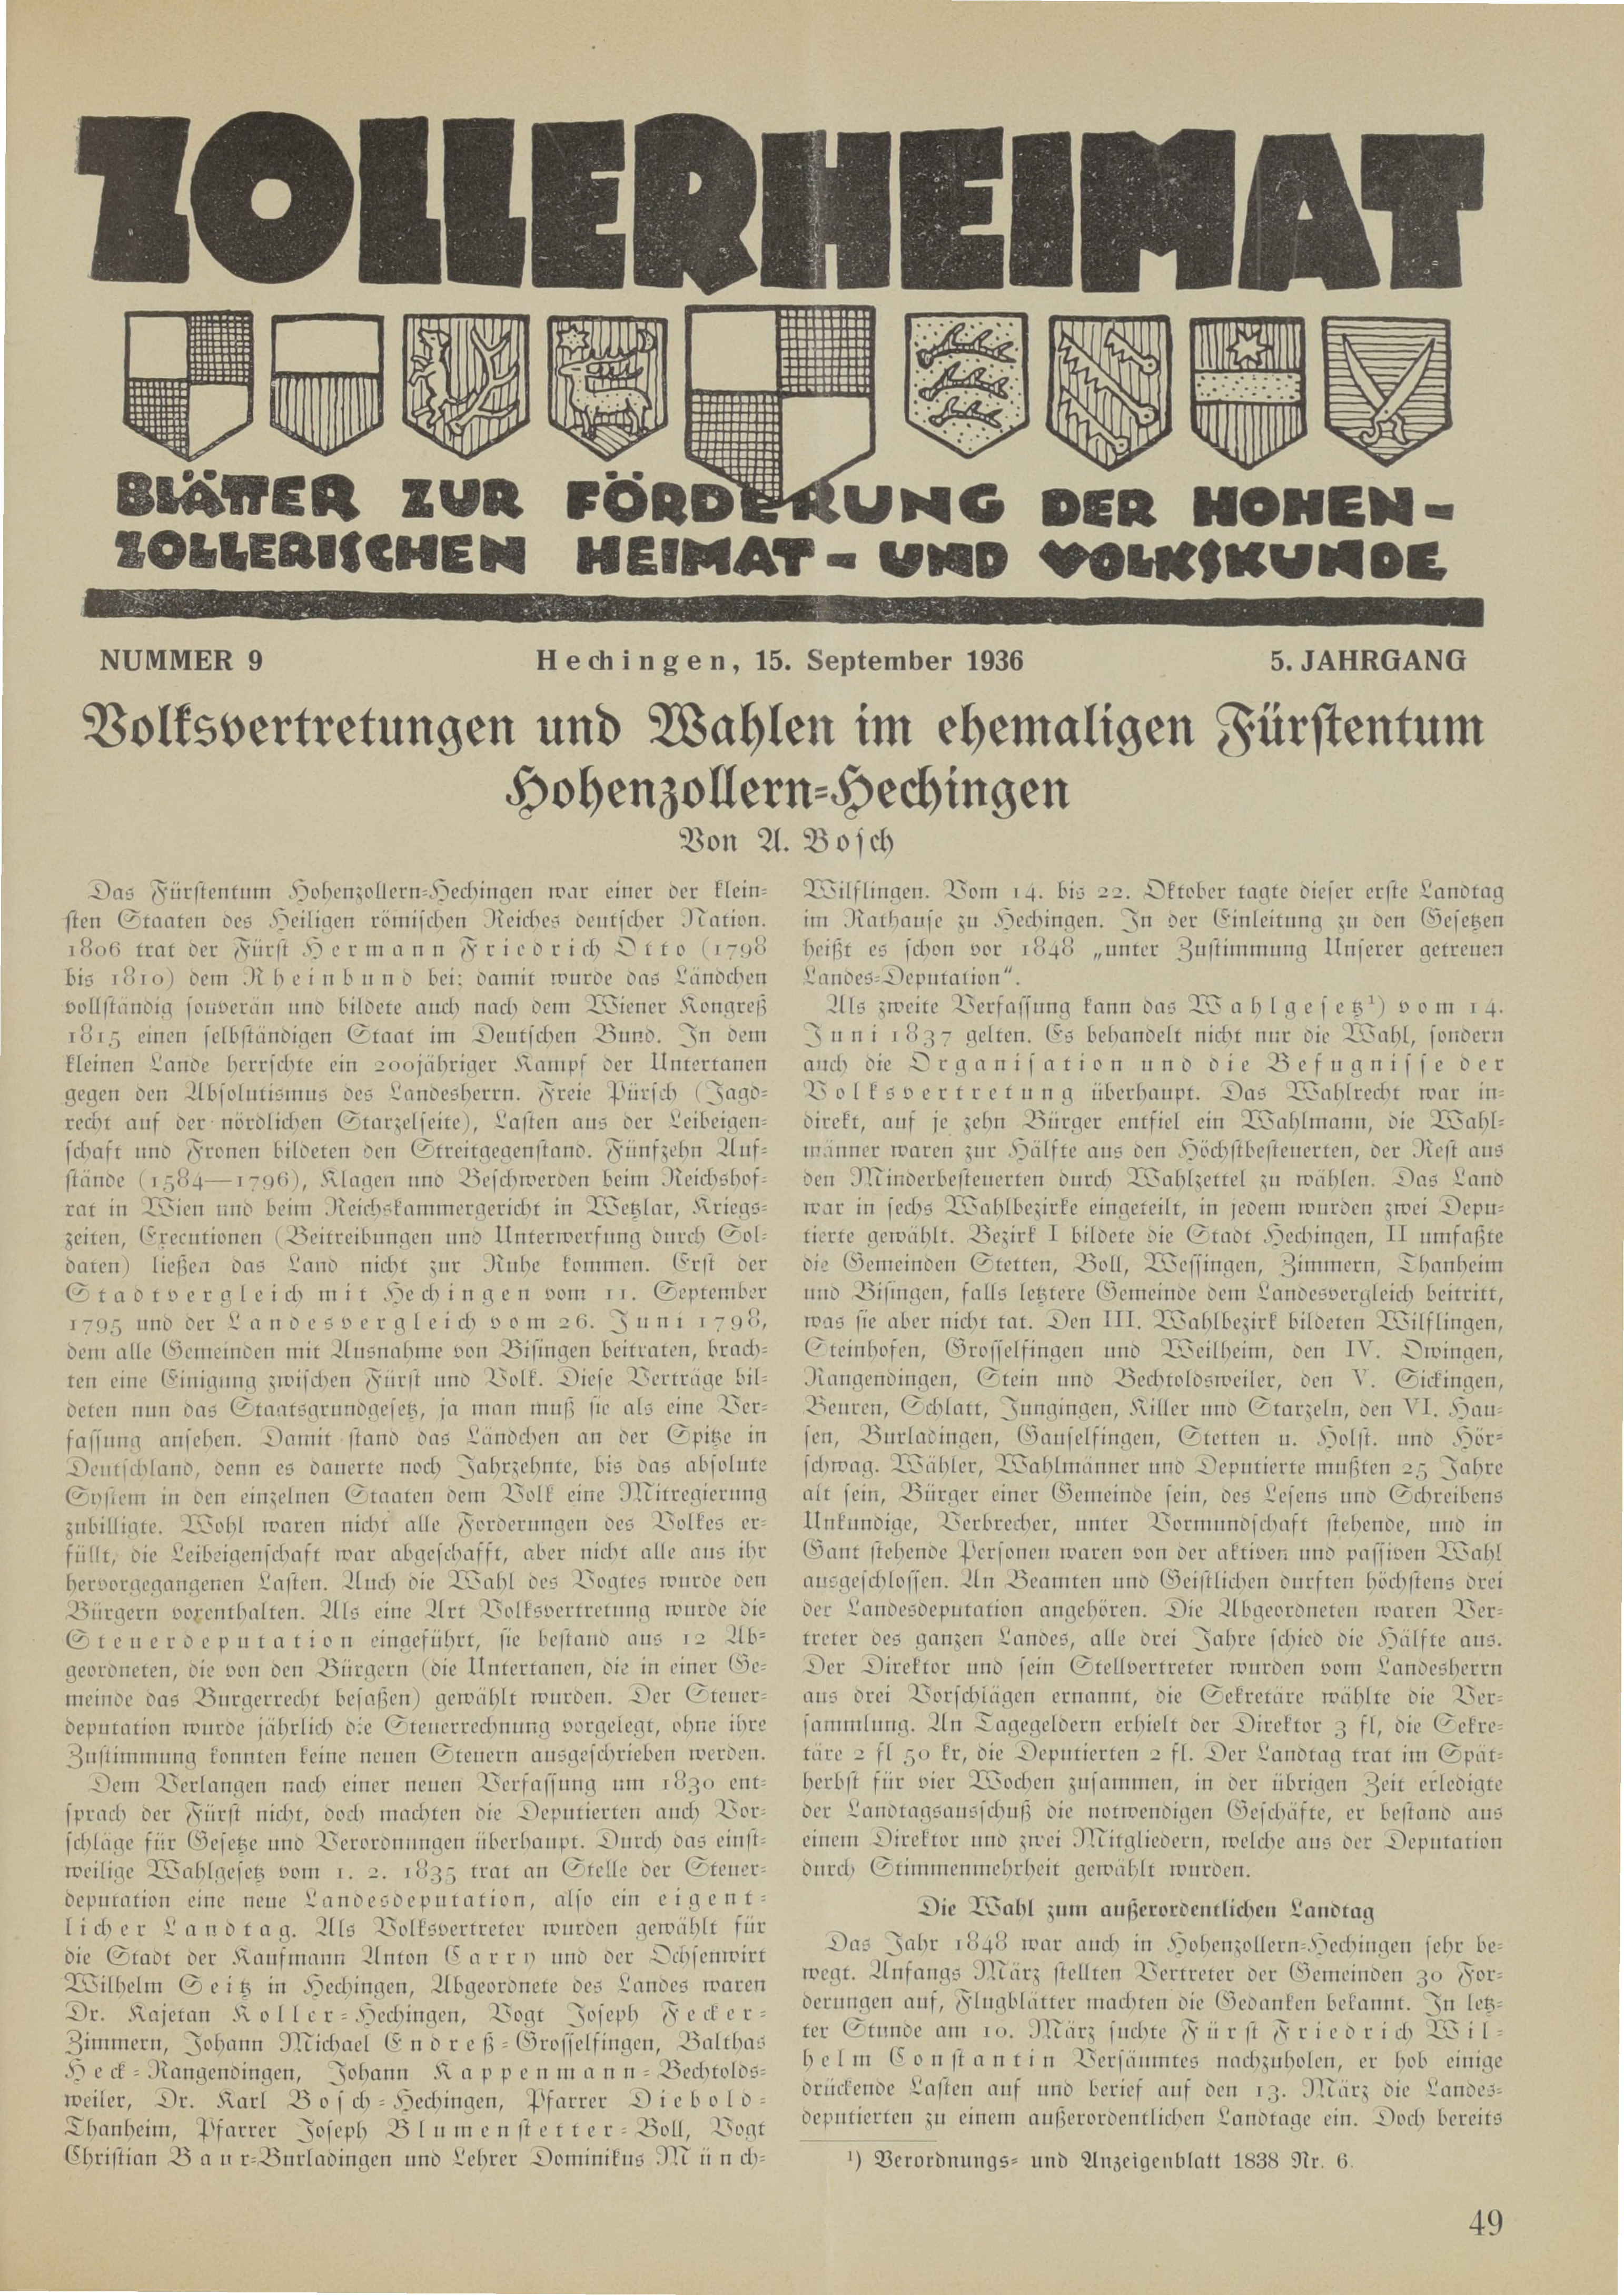                     Ansehen Bd. 5 Nr. 9 (1936): Zollerheimat
                